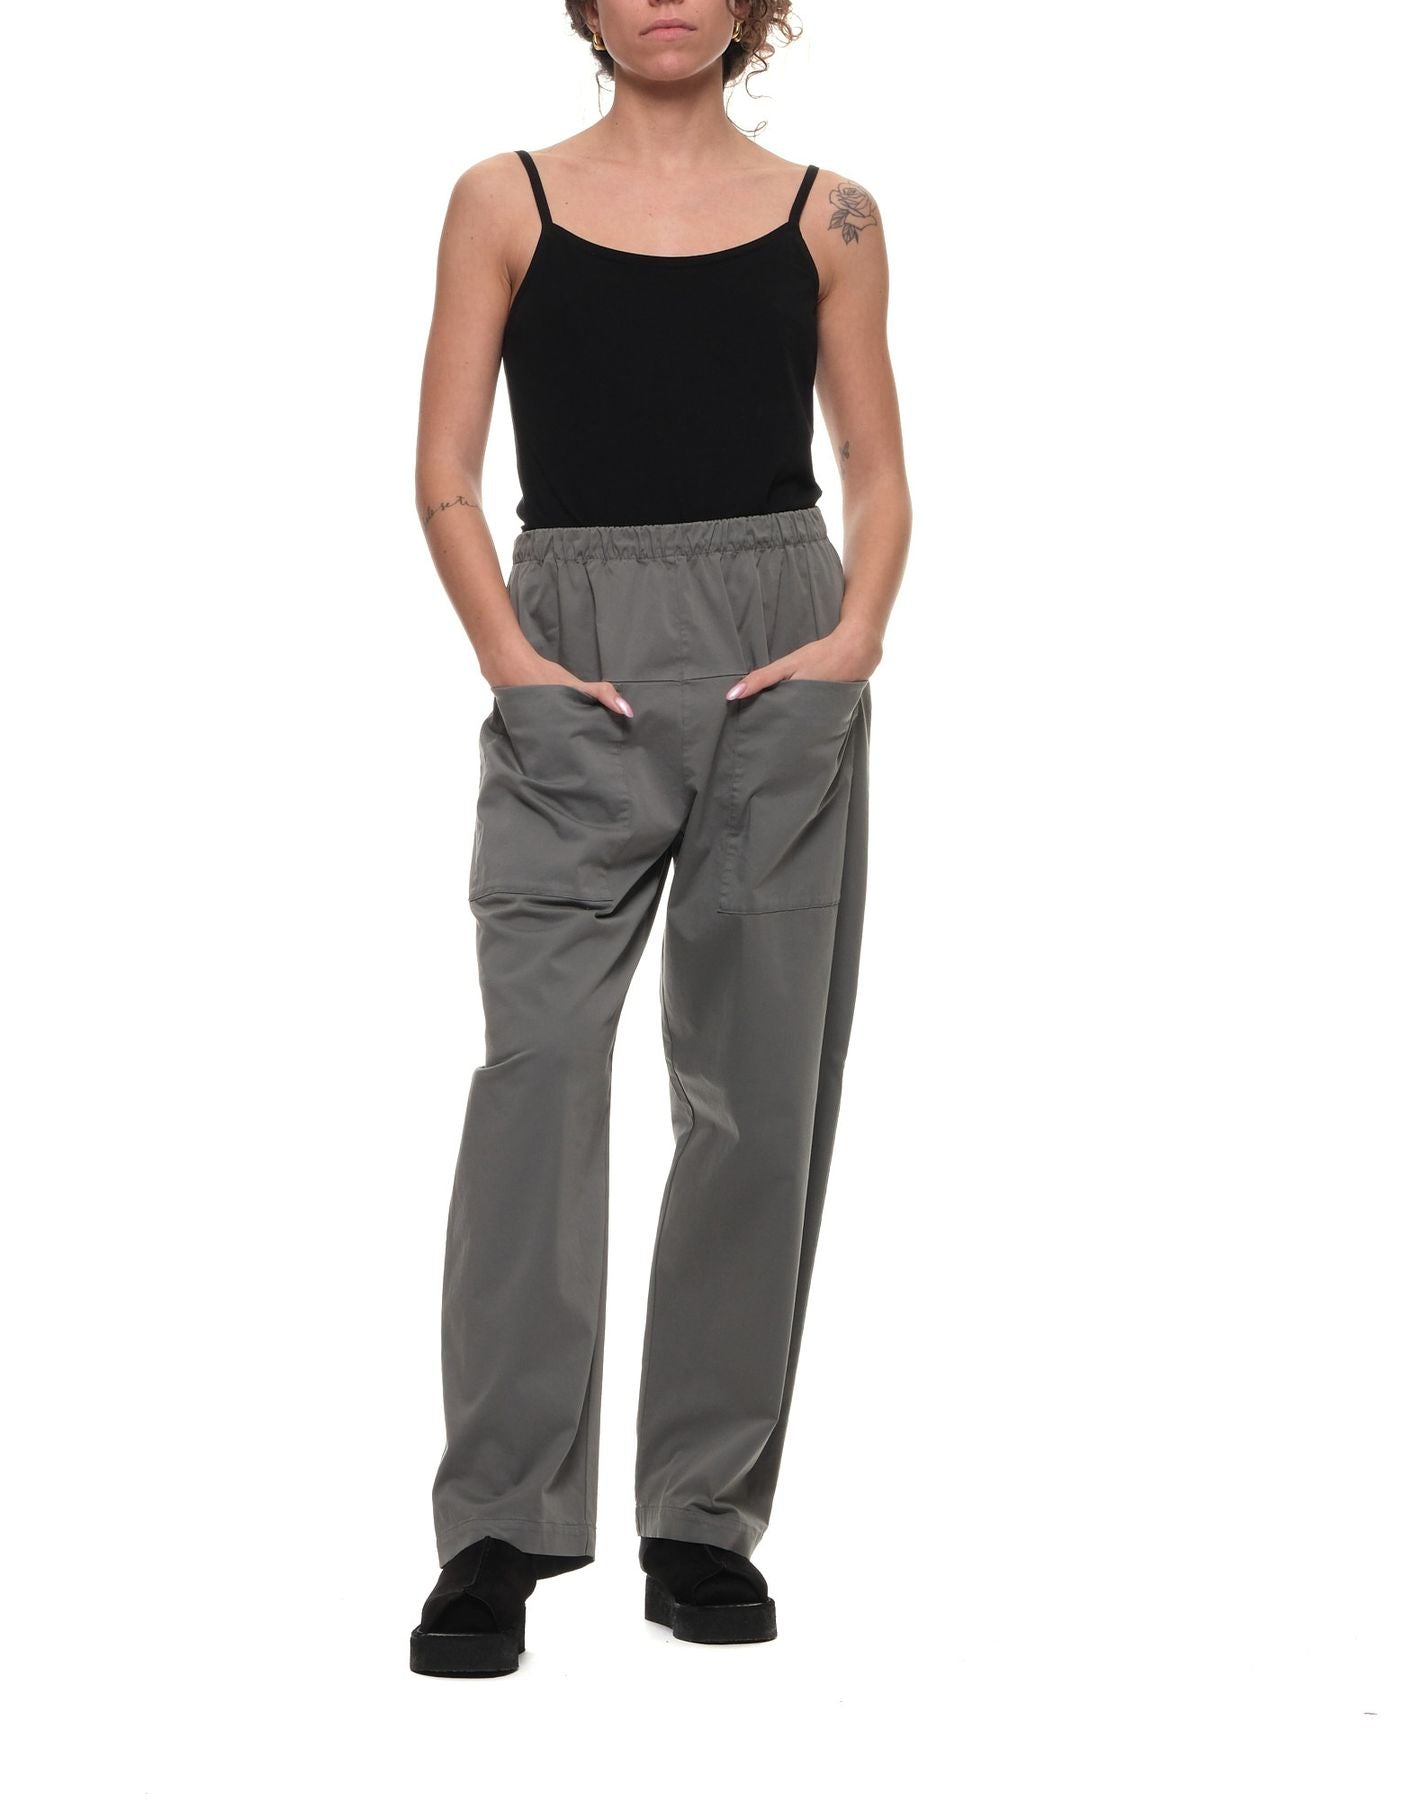 Pantalones para la mujer CFDTRWO242 12 Gray TRANSIT